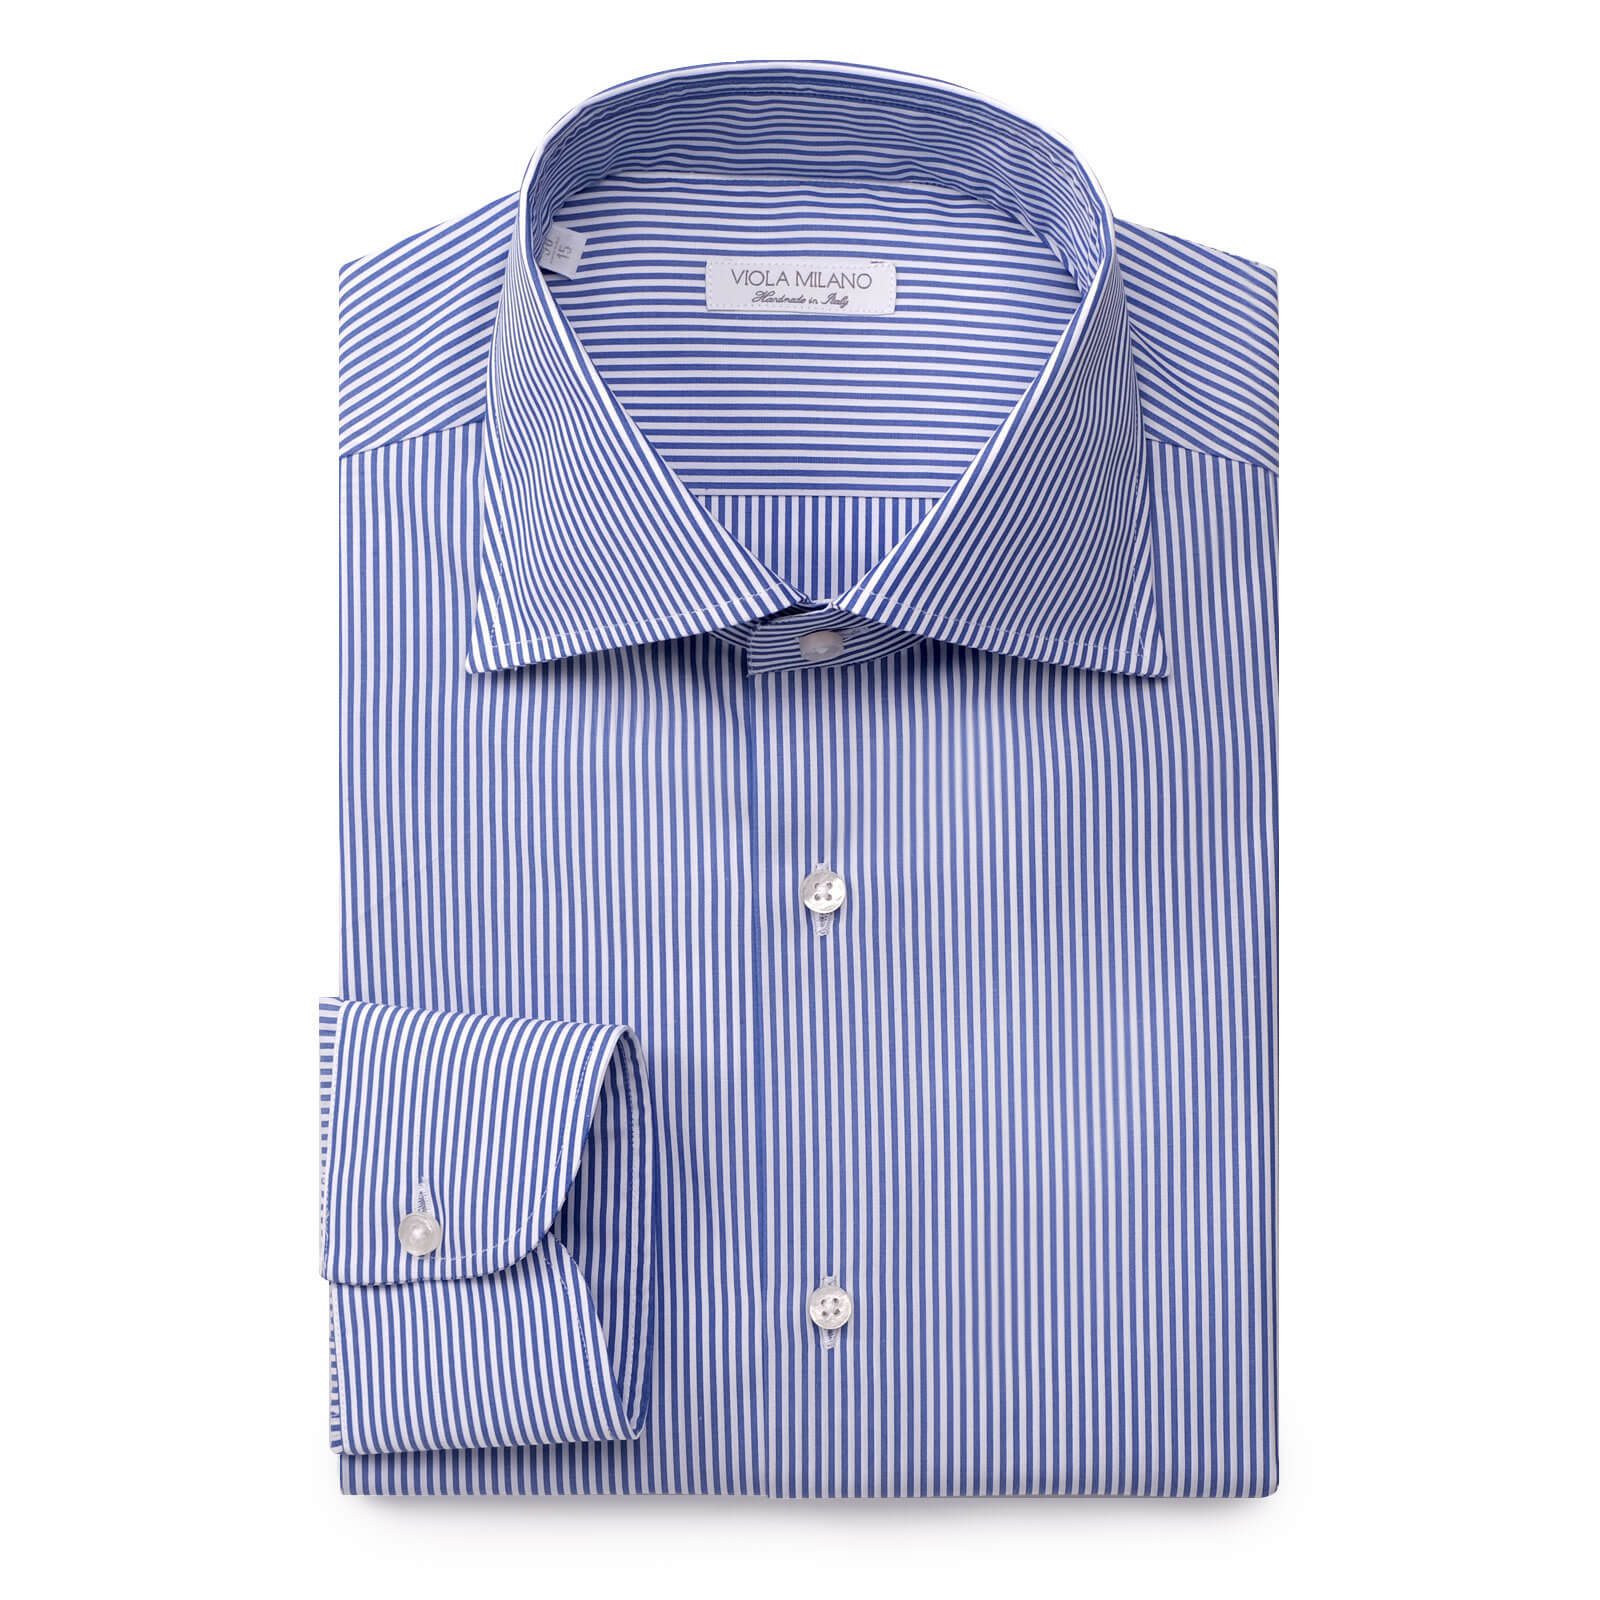 17" Neck 38" Sleeve Slim Fit Button Collar Pattern Camicia Amazon Moda Uomo Abbigliamento Top e t-shirt T-shirt Polo Viola 